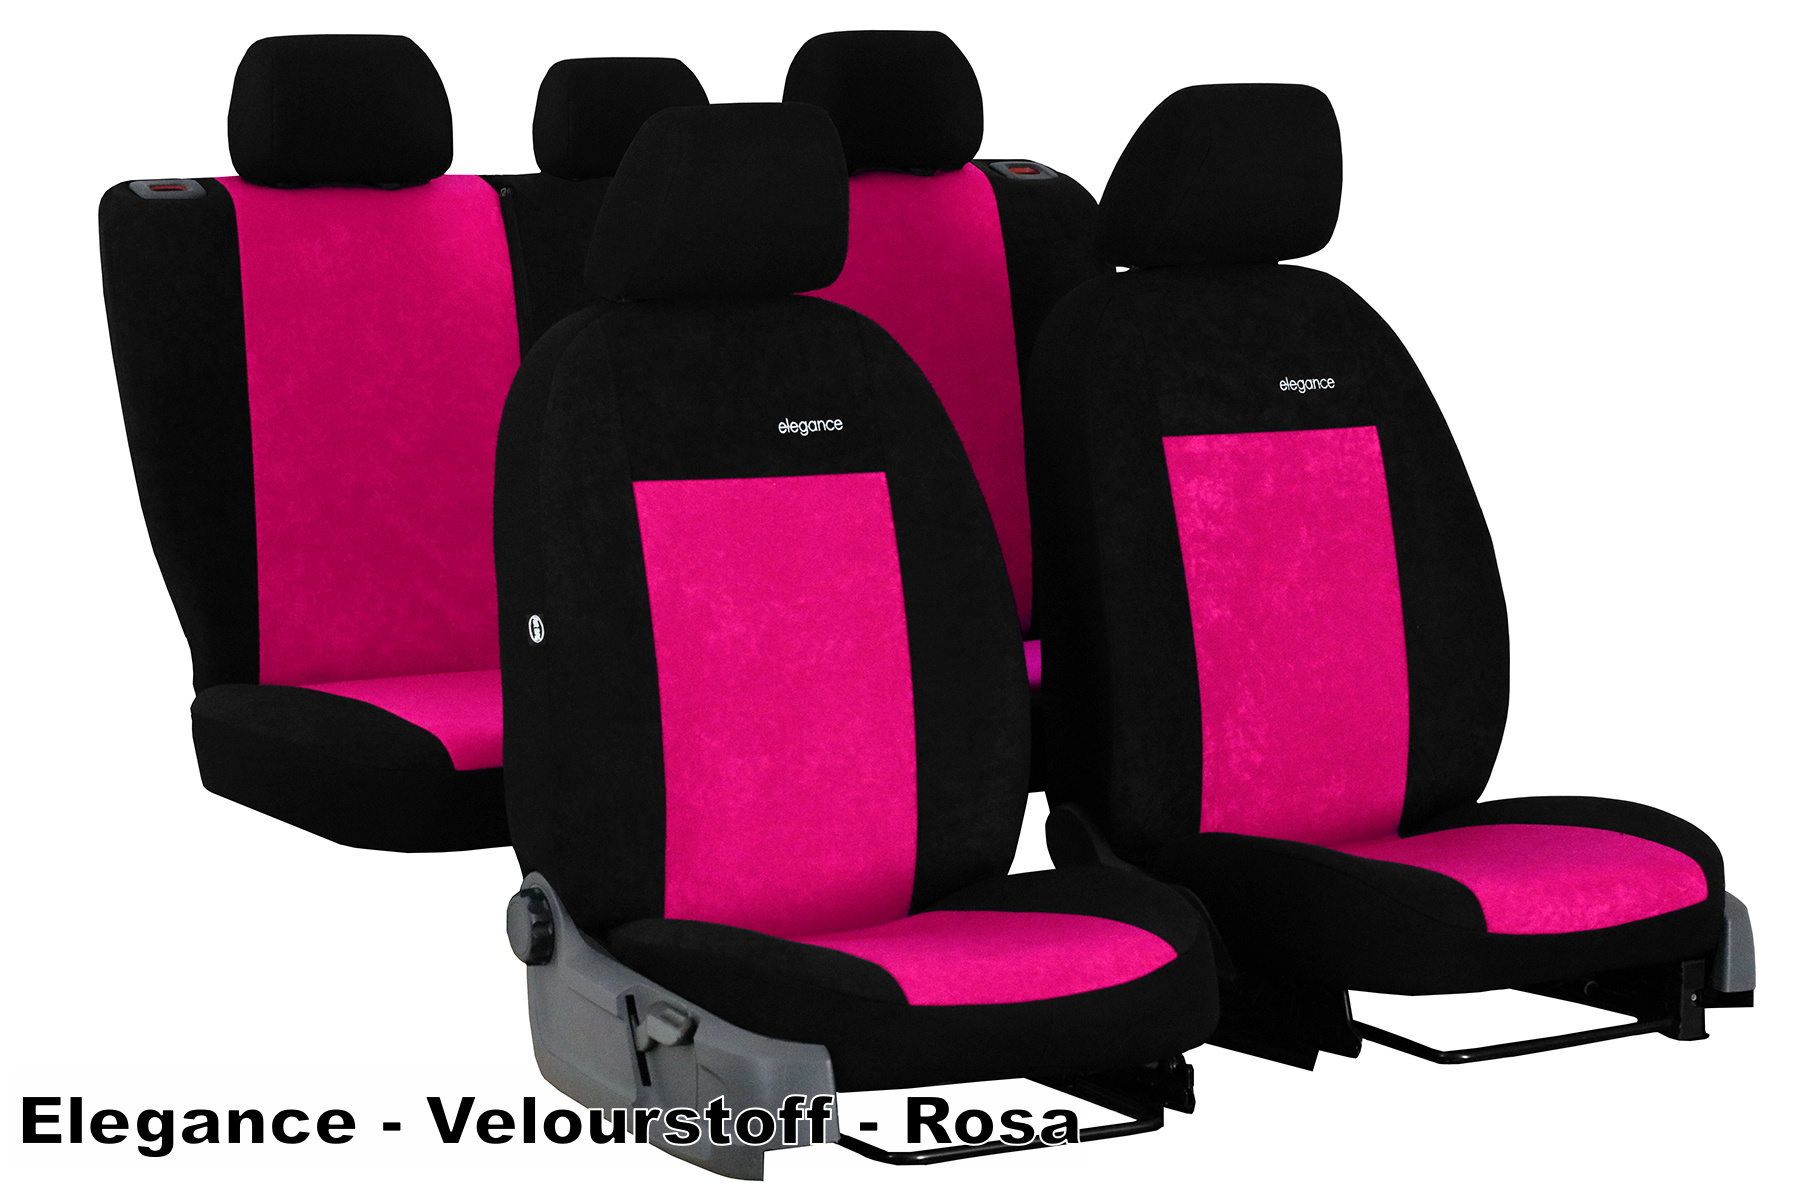 Maßgeschneiderte Sitzbezüge für Skoda Octavia III Kombi, Liftback  (2013-2019) Bezug für die hintere Armlehne) - Autositzbezüge Schonbezüge  für Autositze - Auto-Dekor - Premium - grau DG-0074